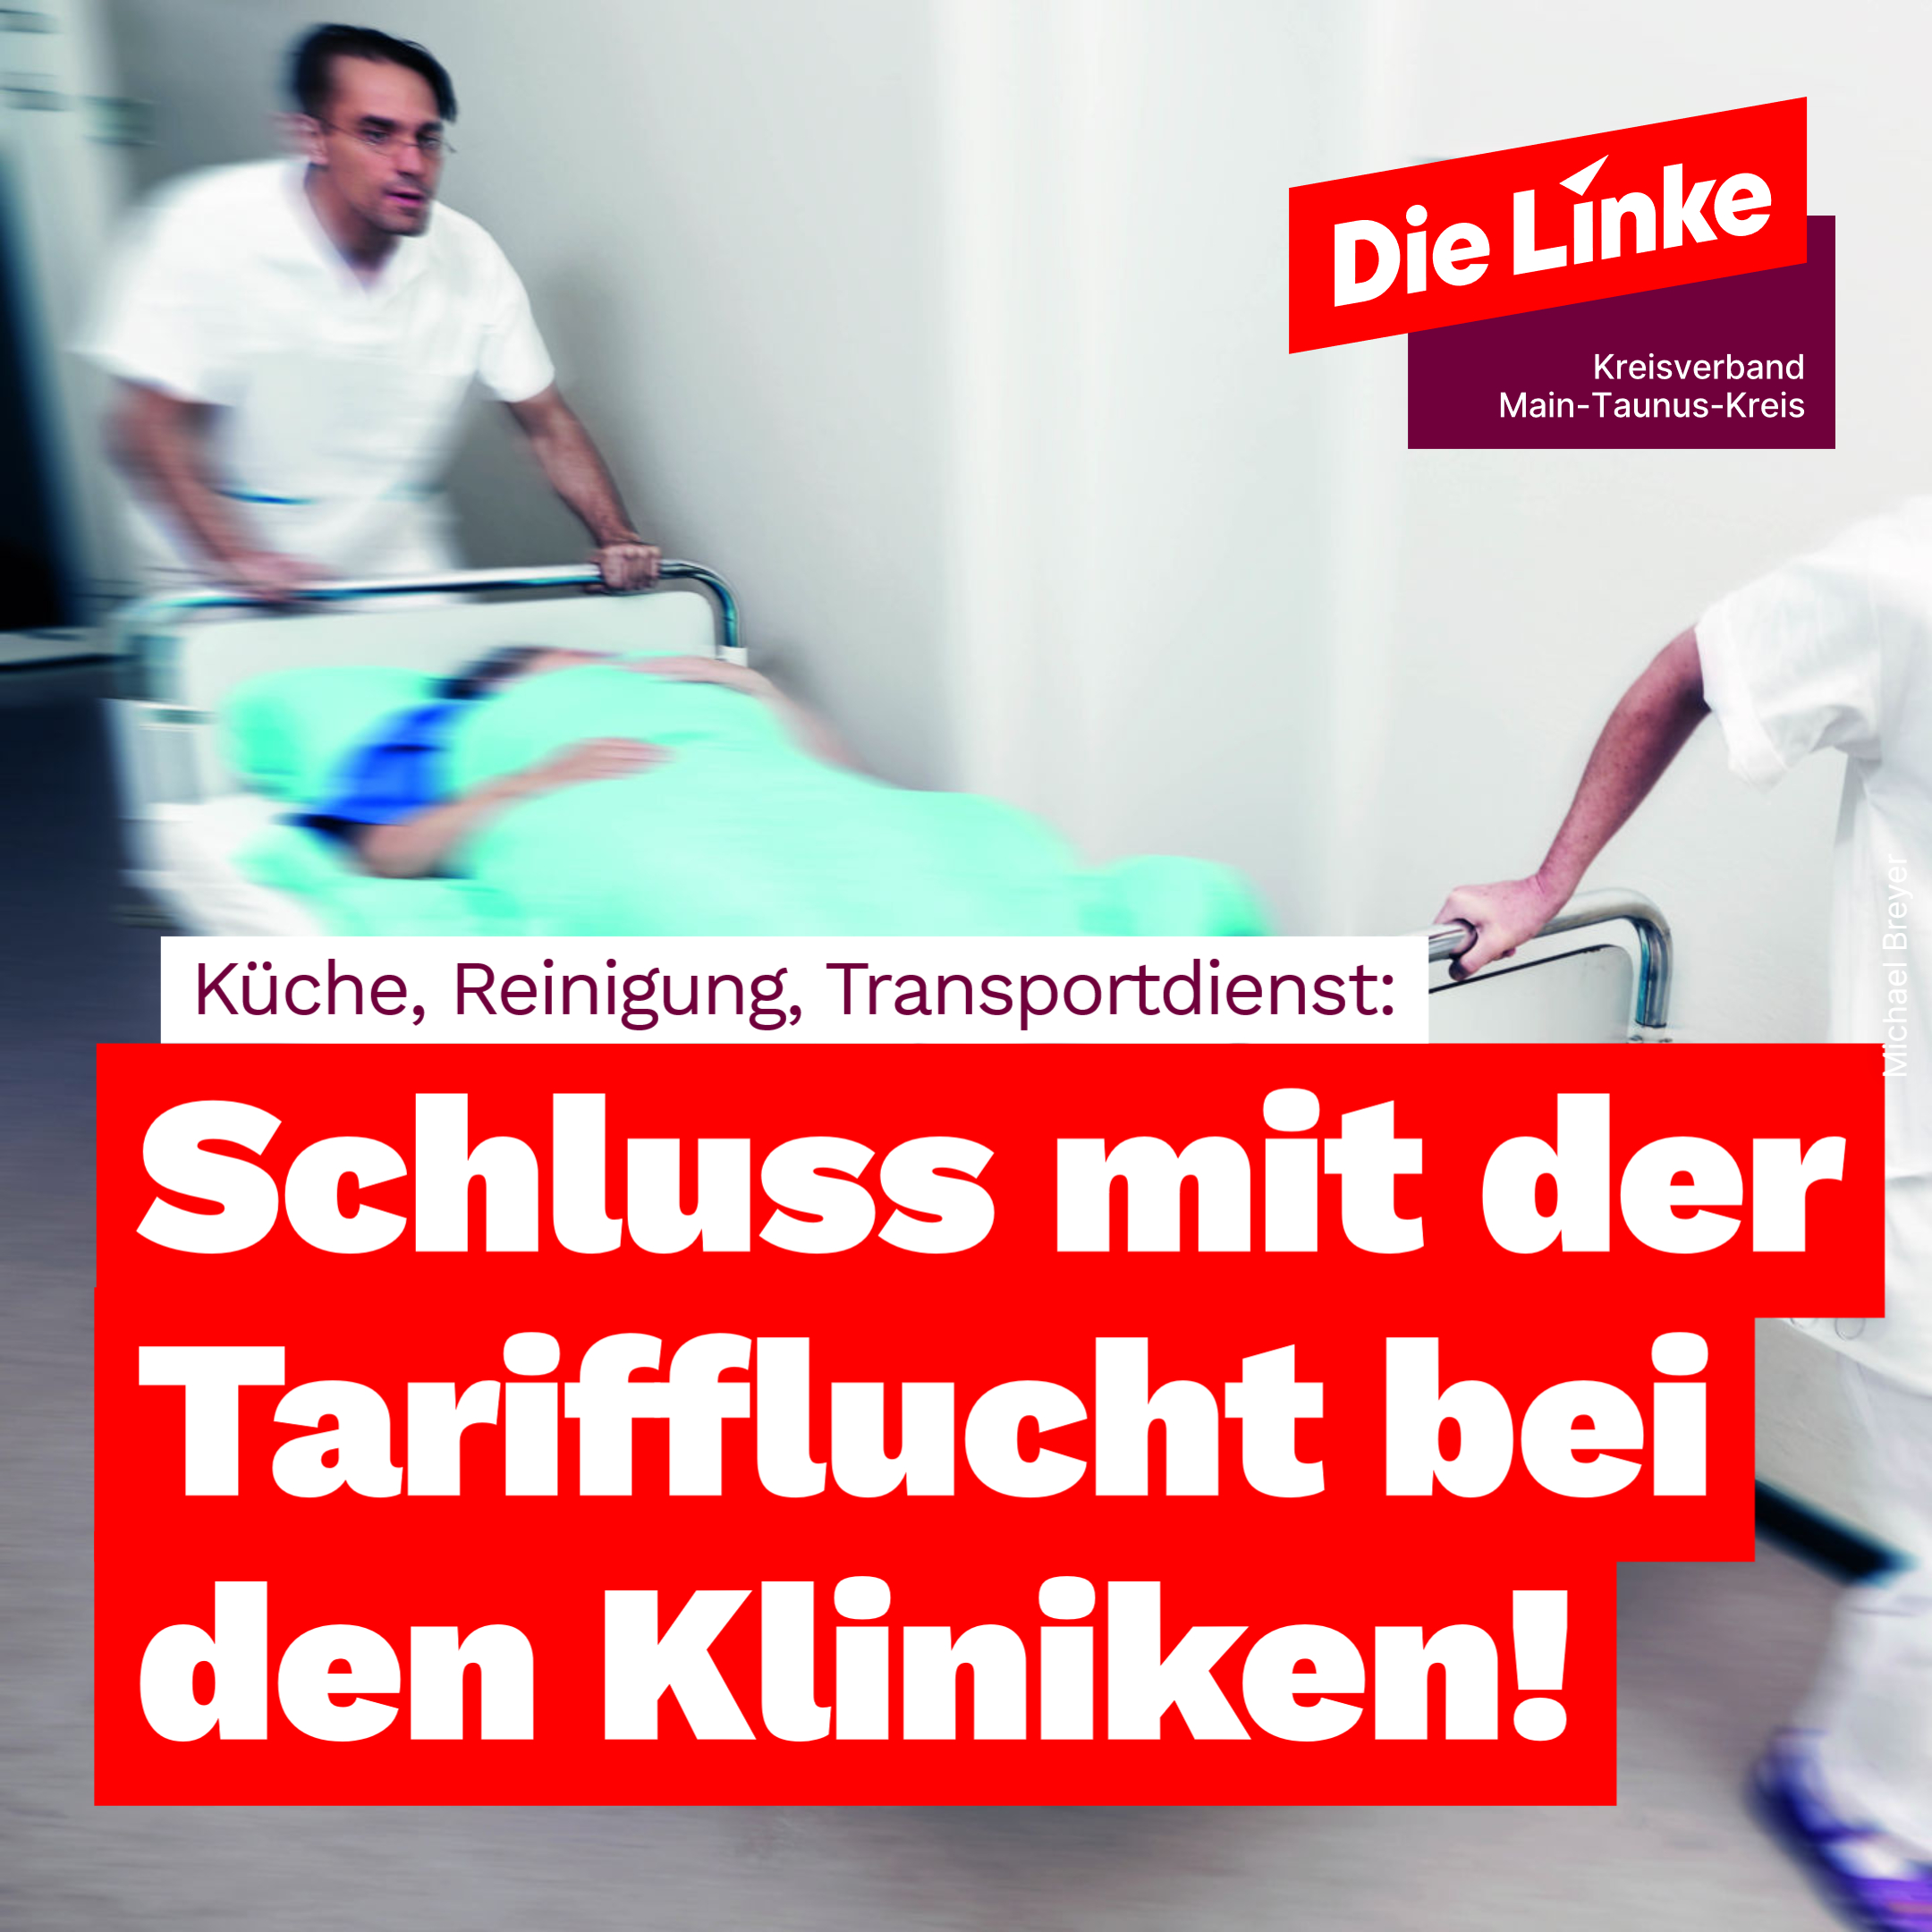 Das Bild zeigt einen Krankentransport in einem Krankenhausflur. Dazu der Text: Küche, Reinigung, Transportdienst: Schluss mit der Tarifflucht bei den Kliniken!